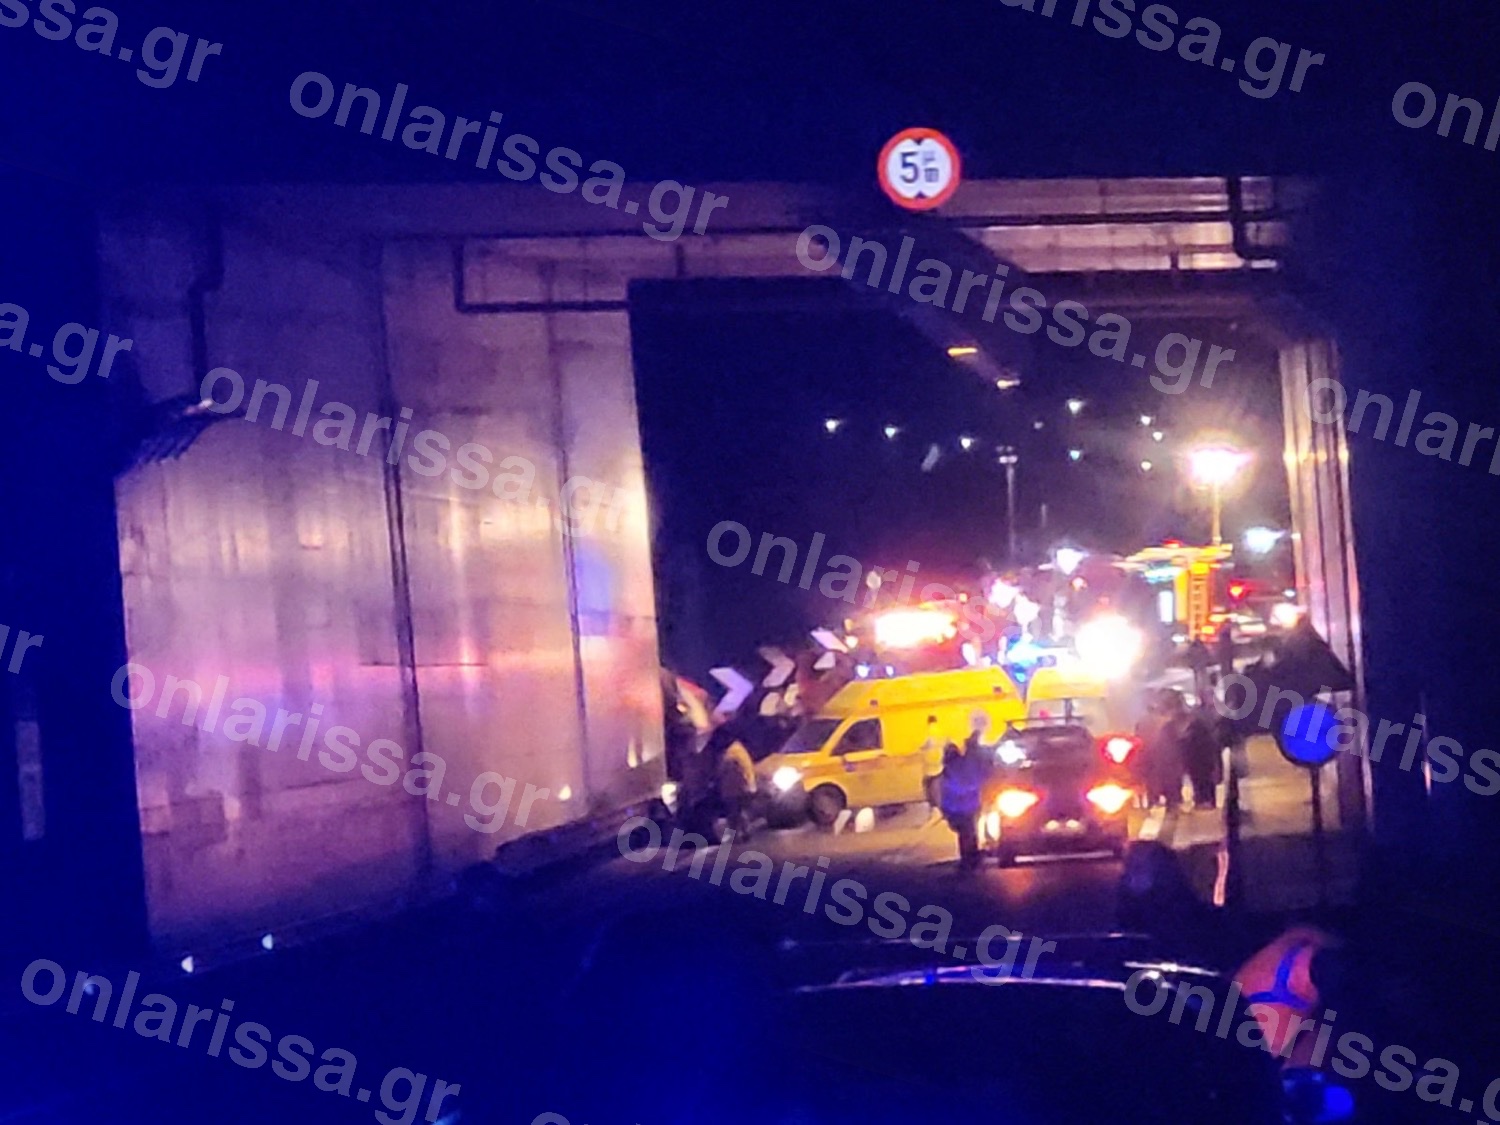 Εκτροχιασμός τρένου στα Τέμπη: Τουλάχιστον 26 οι νεκροί και 85 οι τραυματίες, άμορφη μάζα τα βαγόνια, ΦΩΤΟ - ΒΙΝΤΕΟ